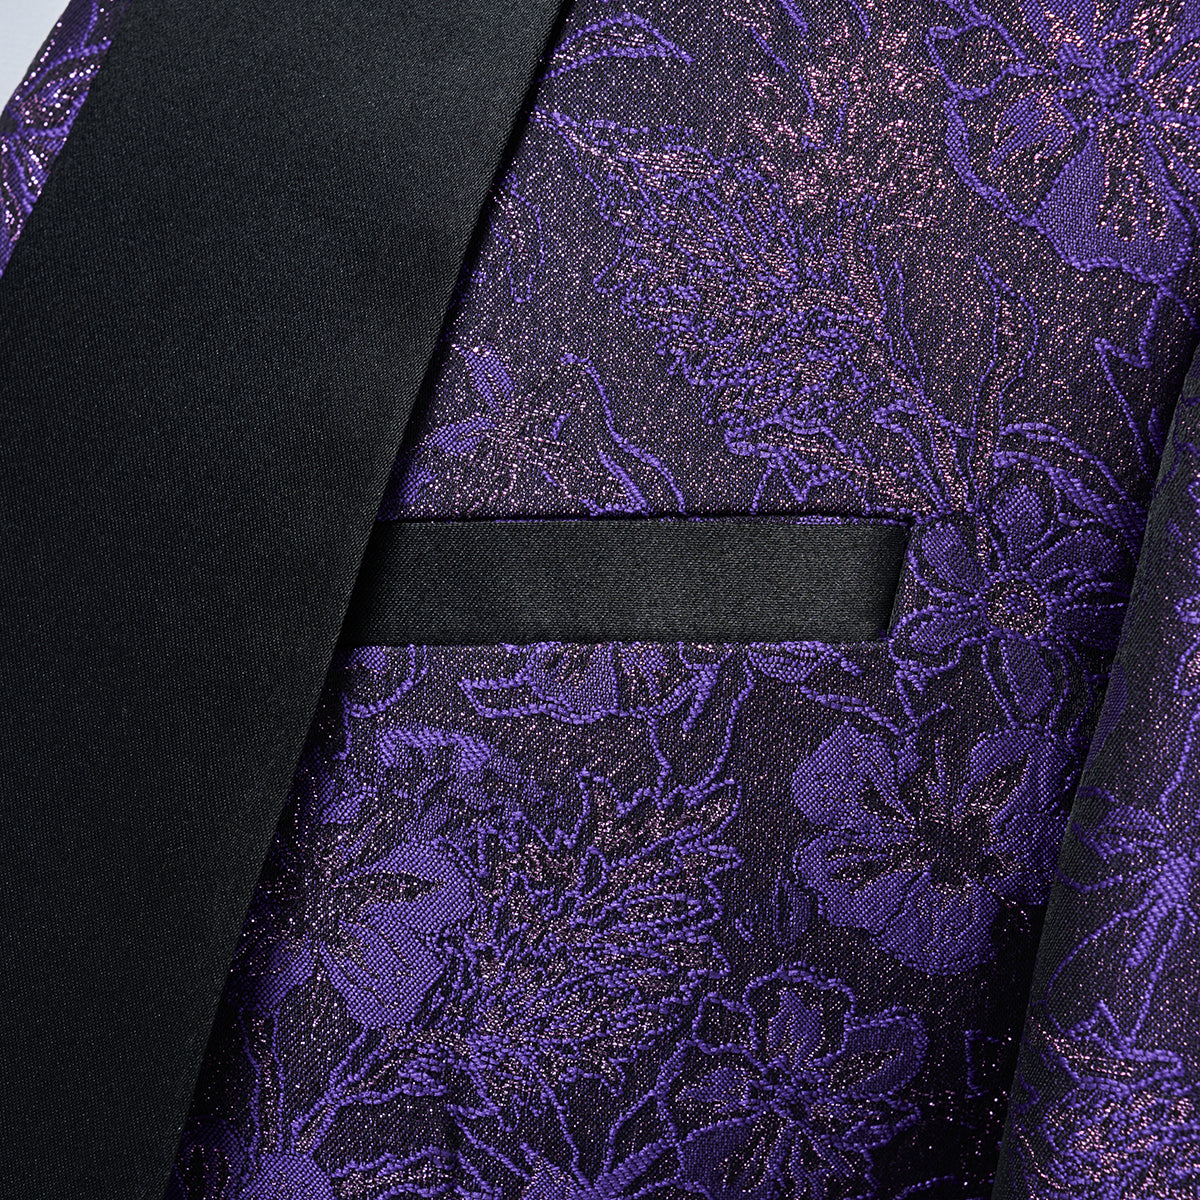 Men's Shawl Collar Print Suit 3-Piece Dress Suit Purple